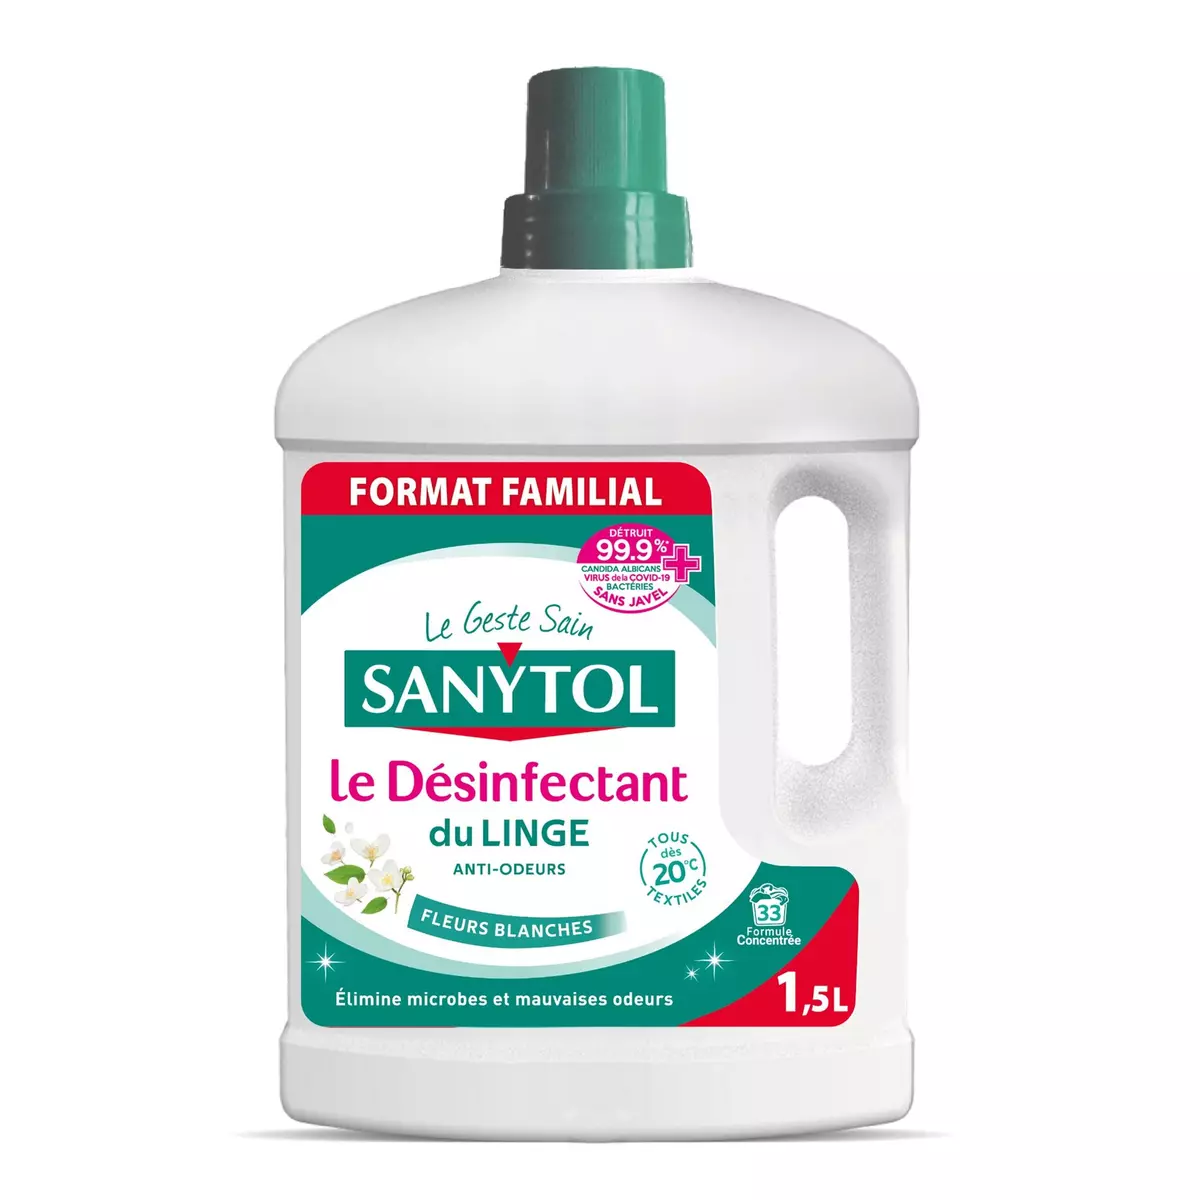 SANYTOL Désinfectant du linge anti-odeurs fleurs blanches Format familial 1,5l